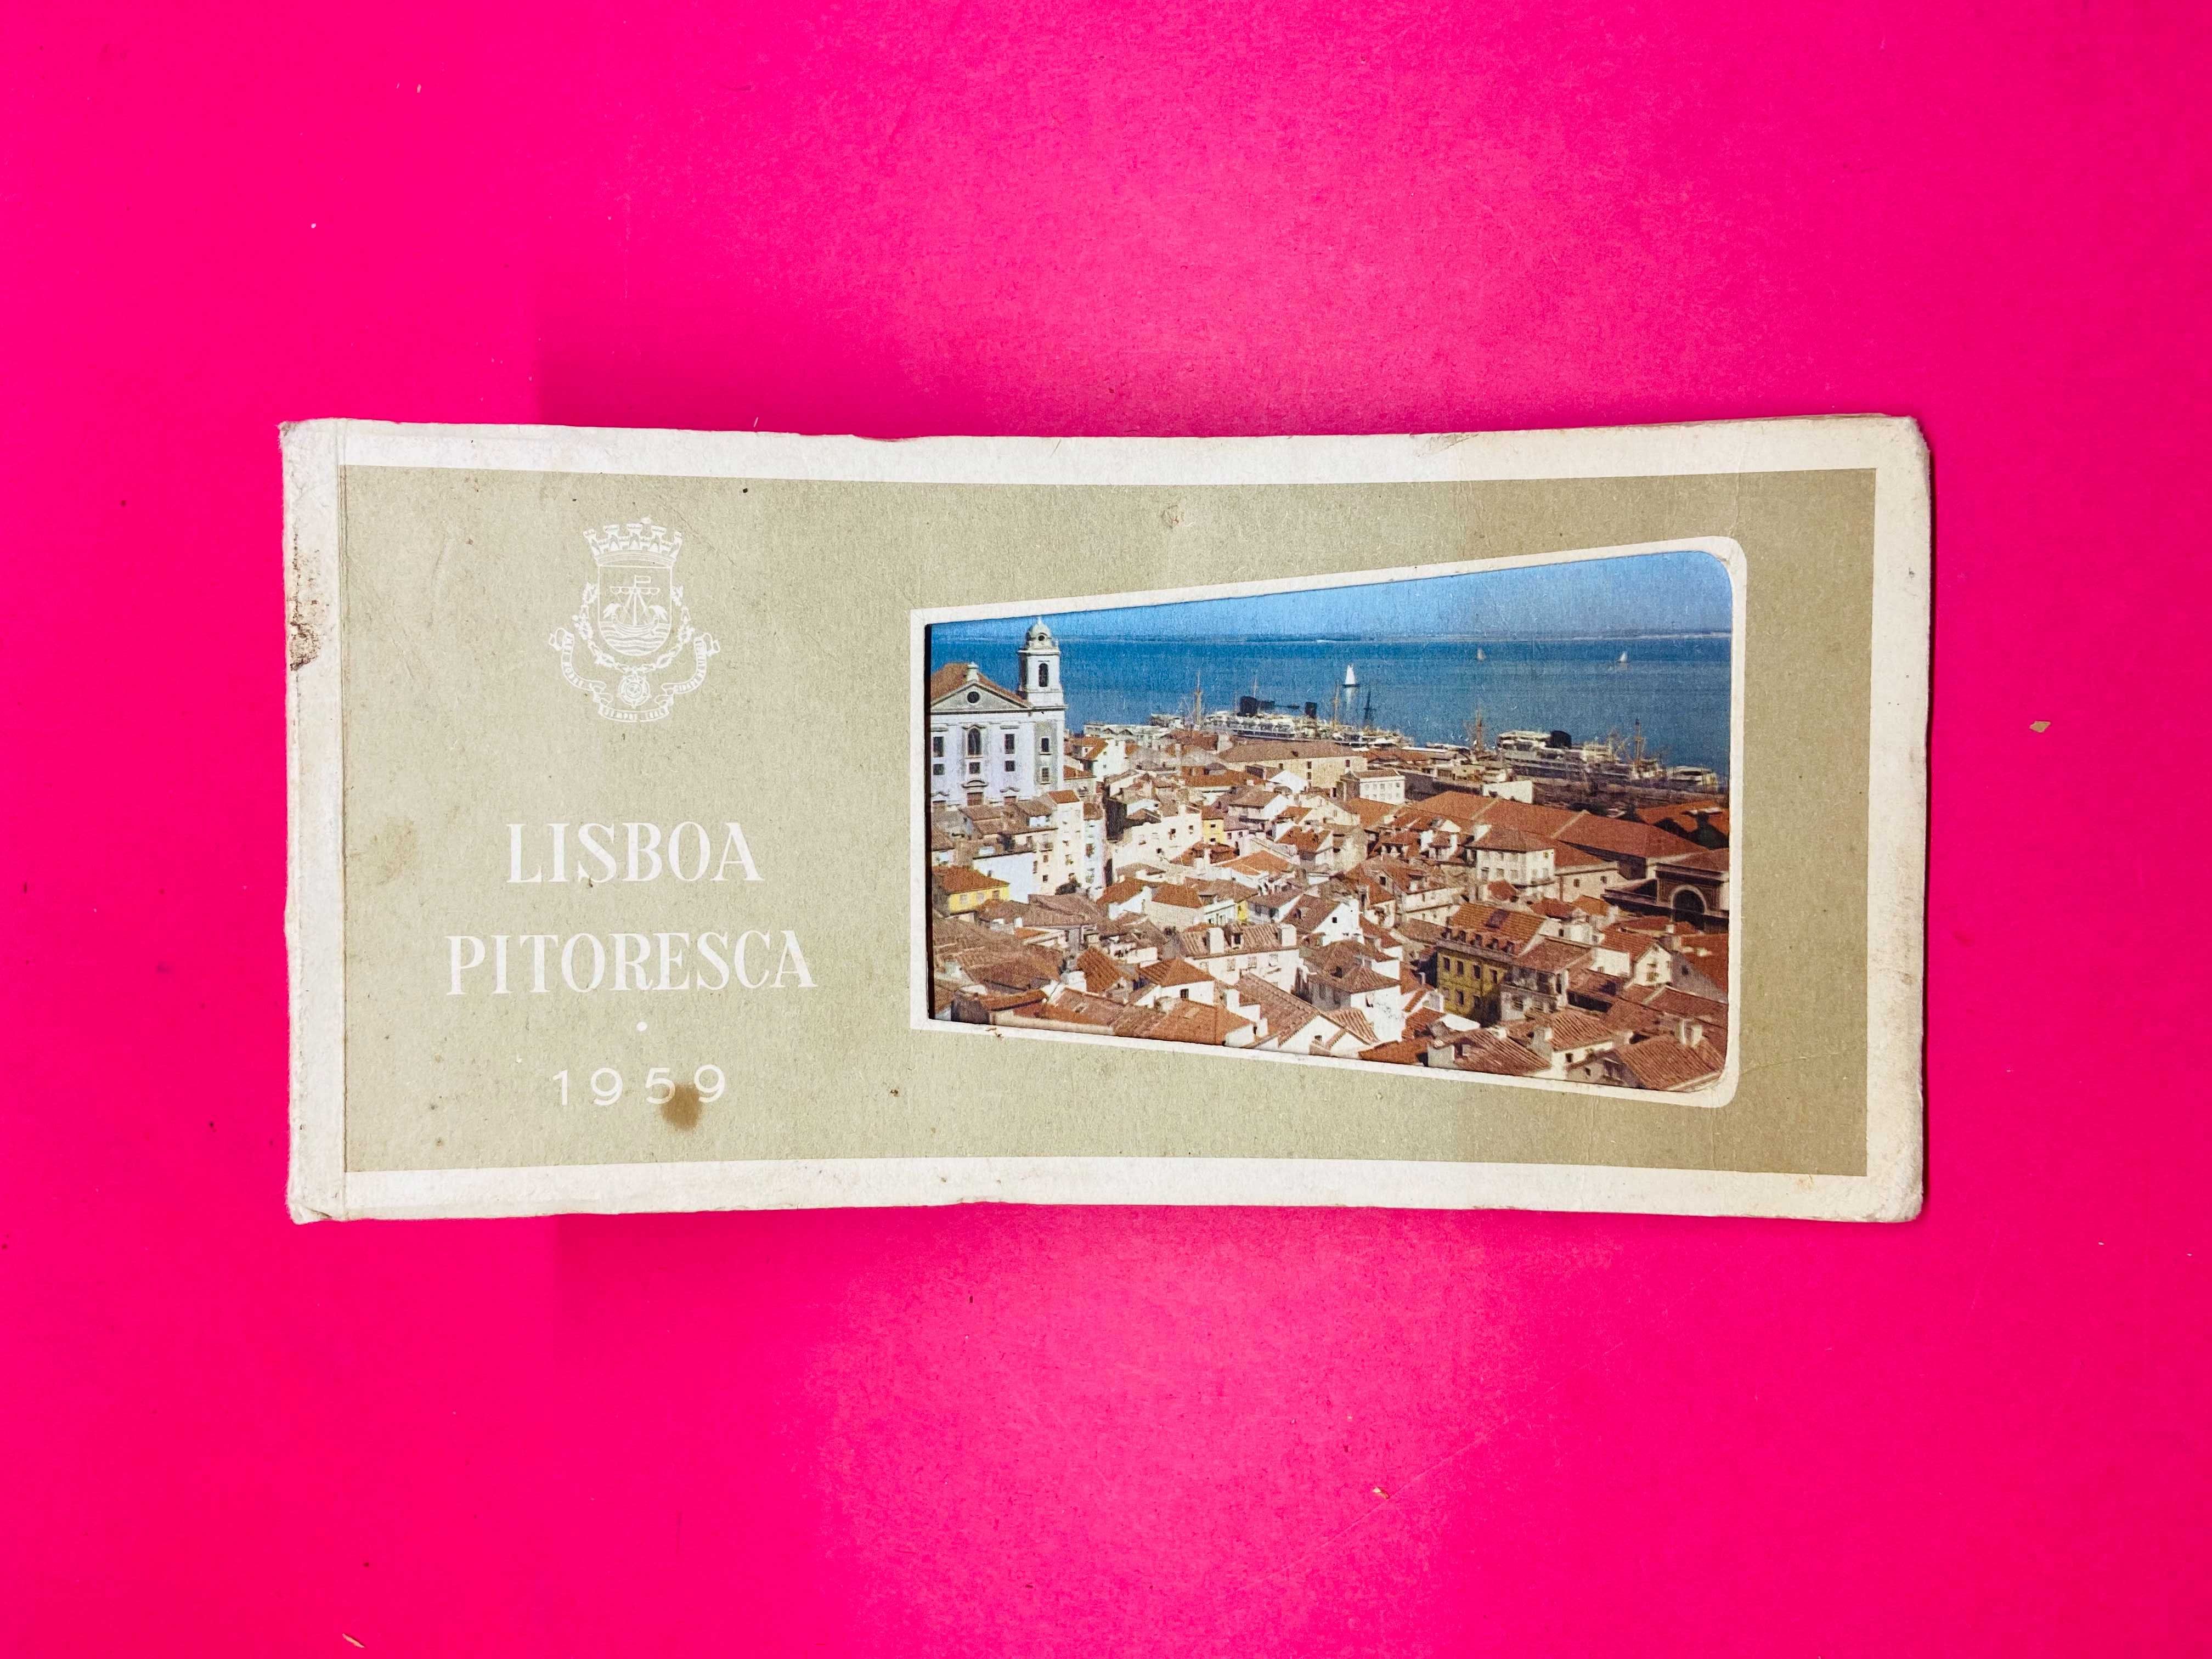 Lisboa Pitoresca 1959 - 8 postais - Município de Lisboa